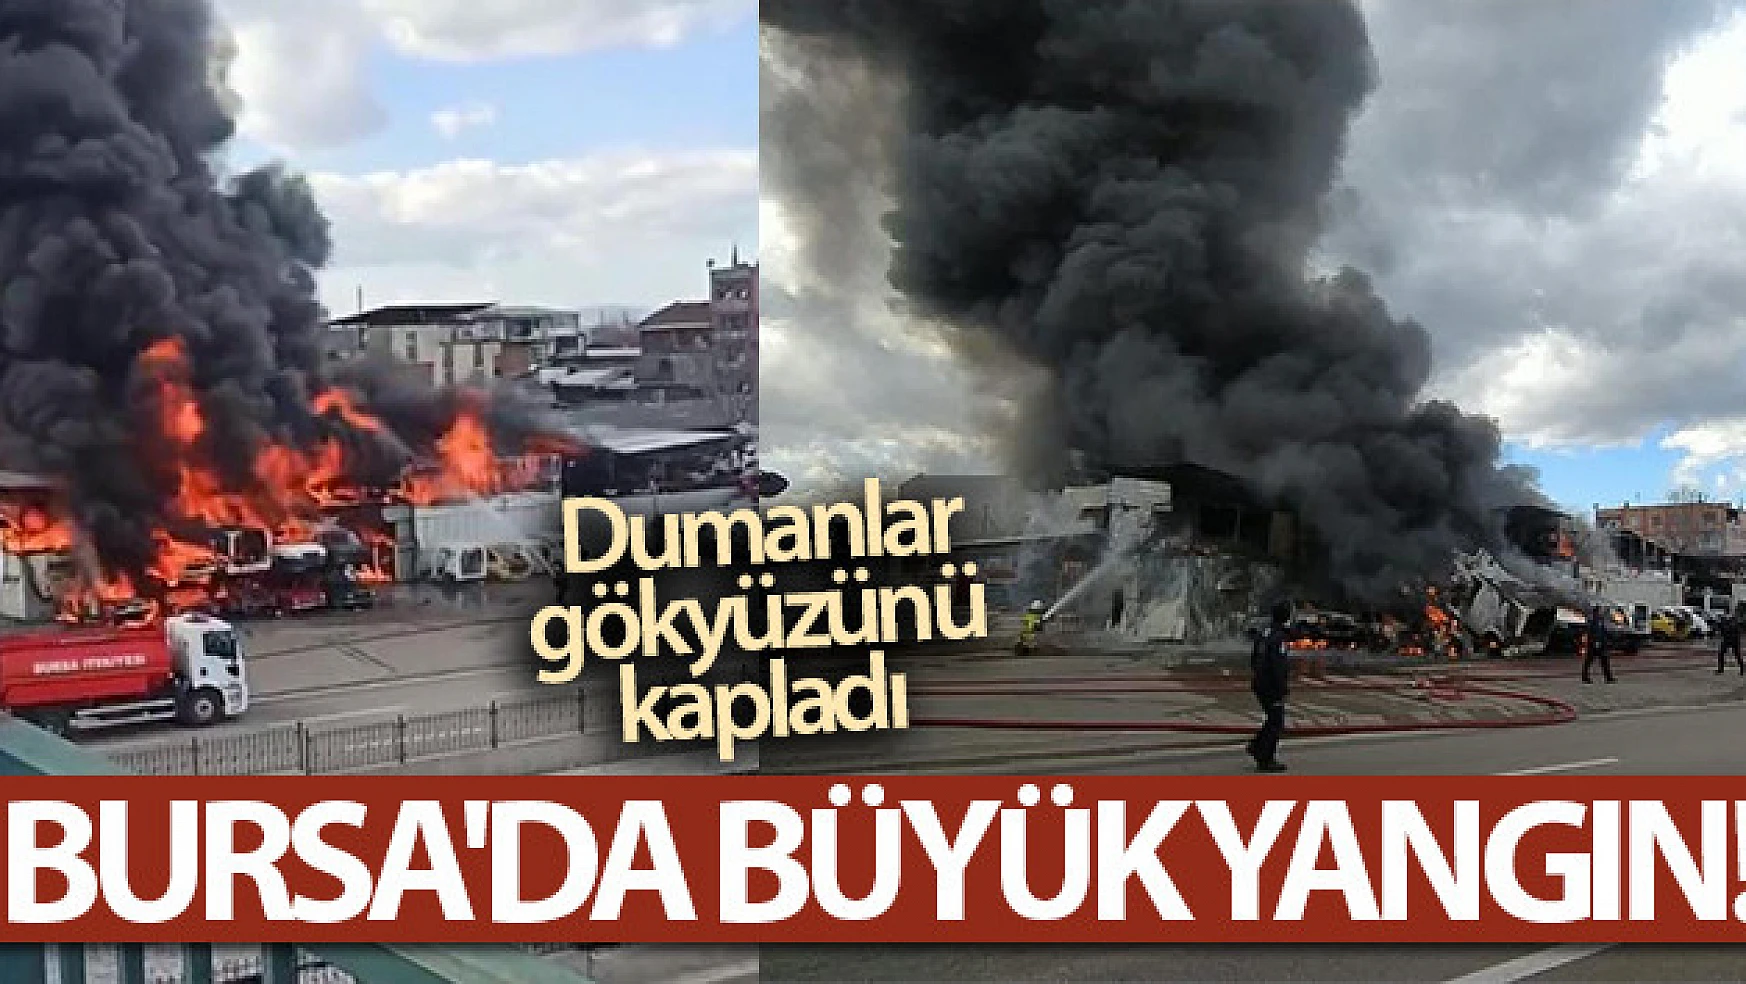 Bursa'da büyük yangın...Dumanlar gökyüzünü kapladı